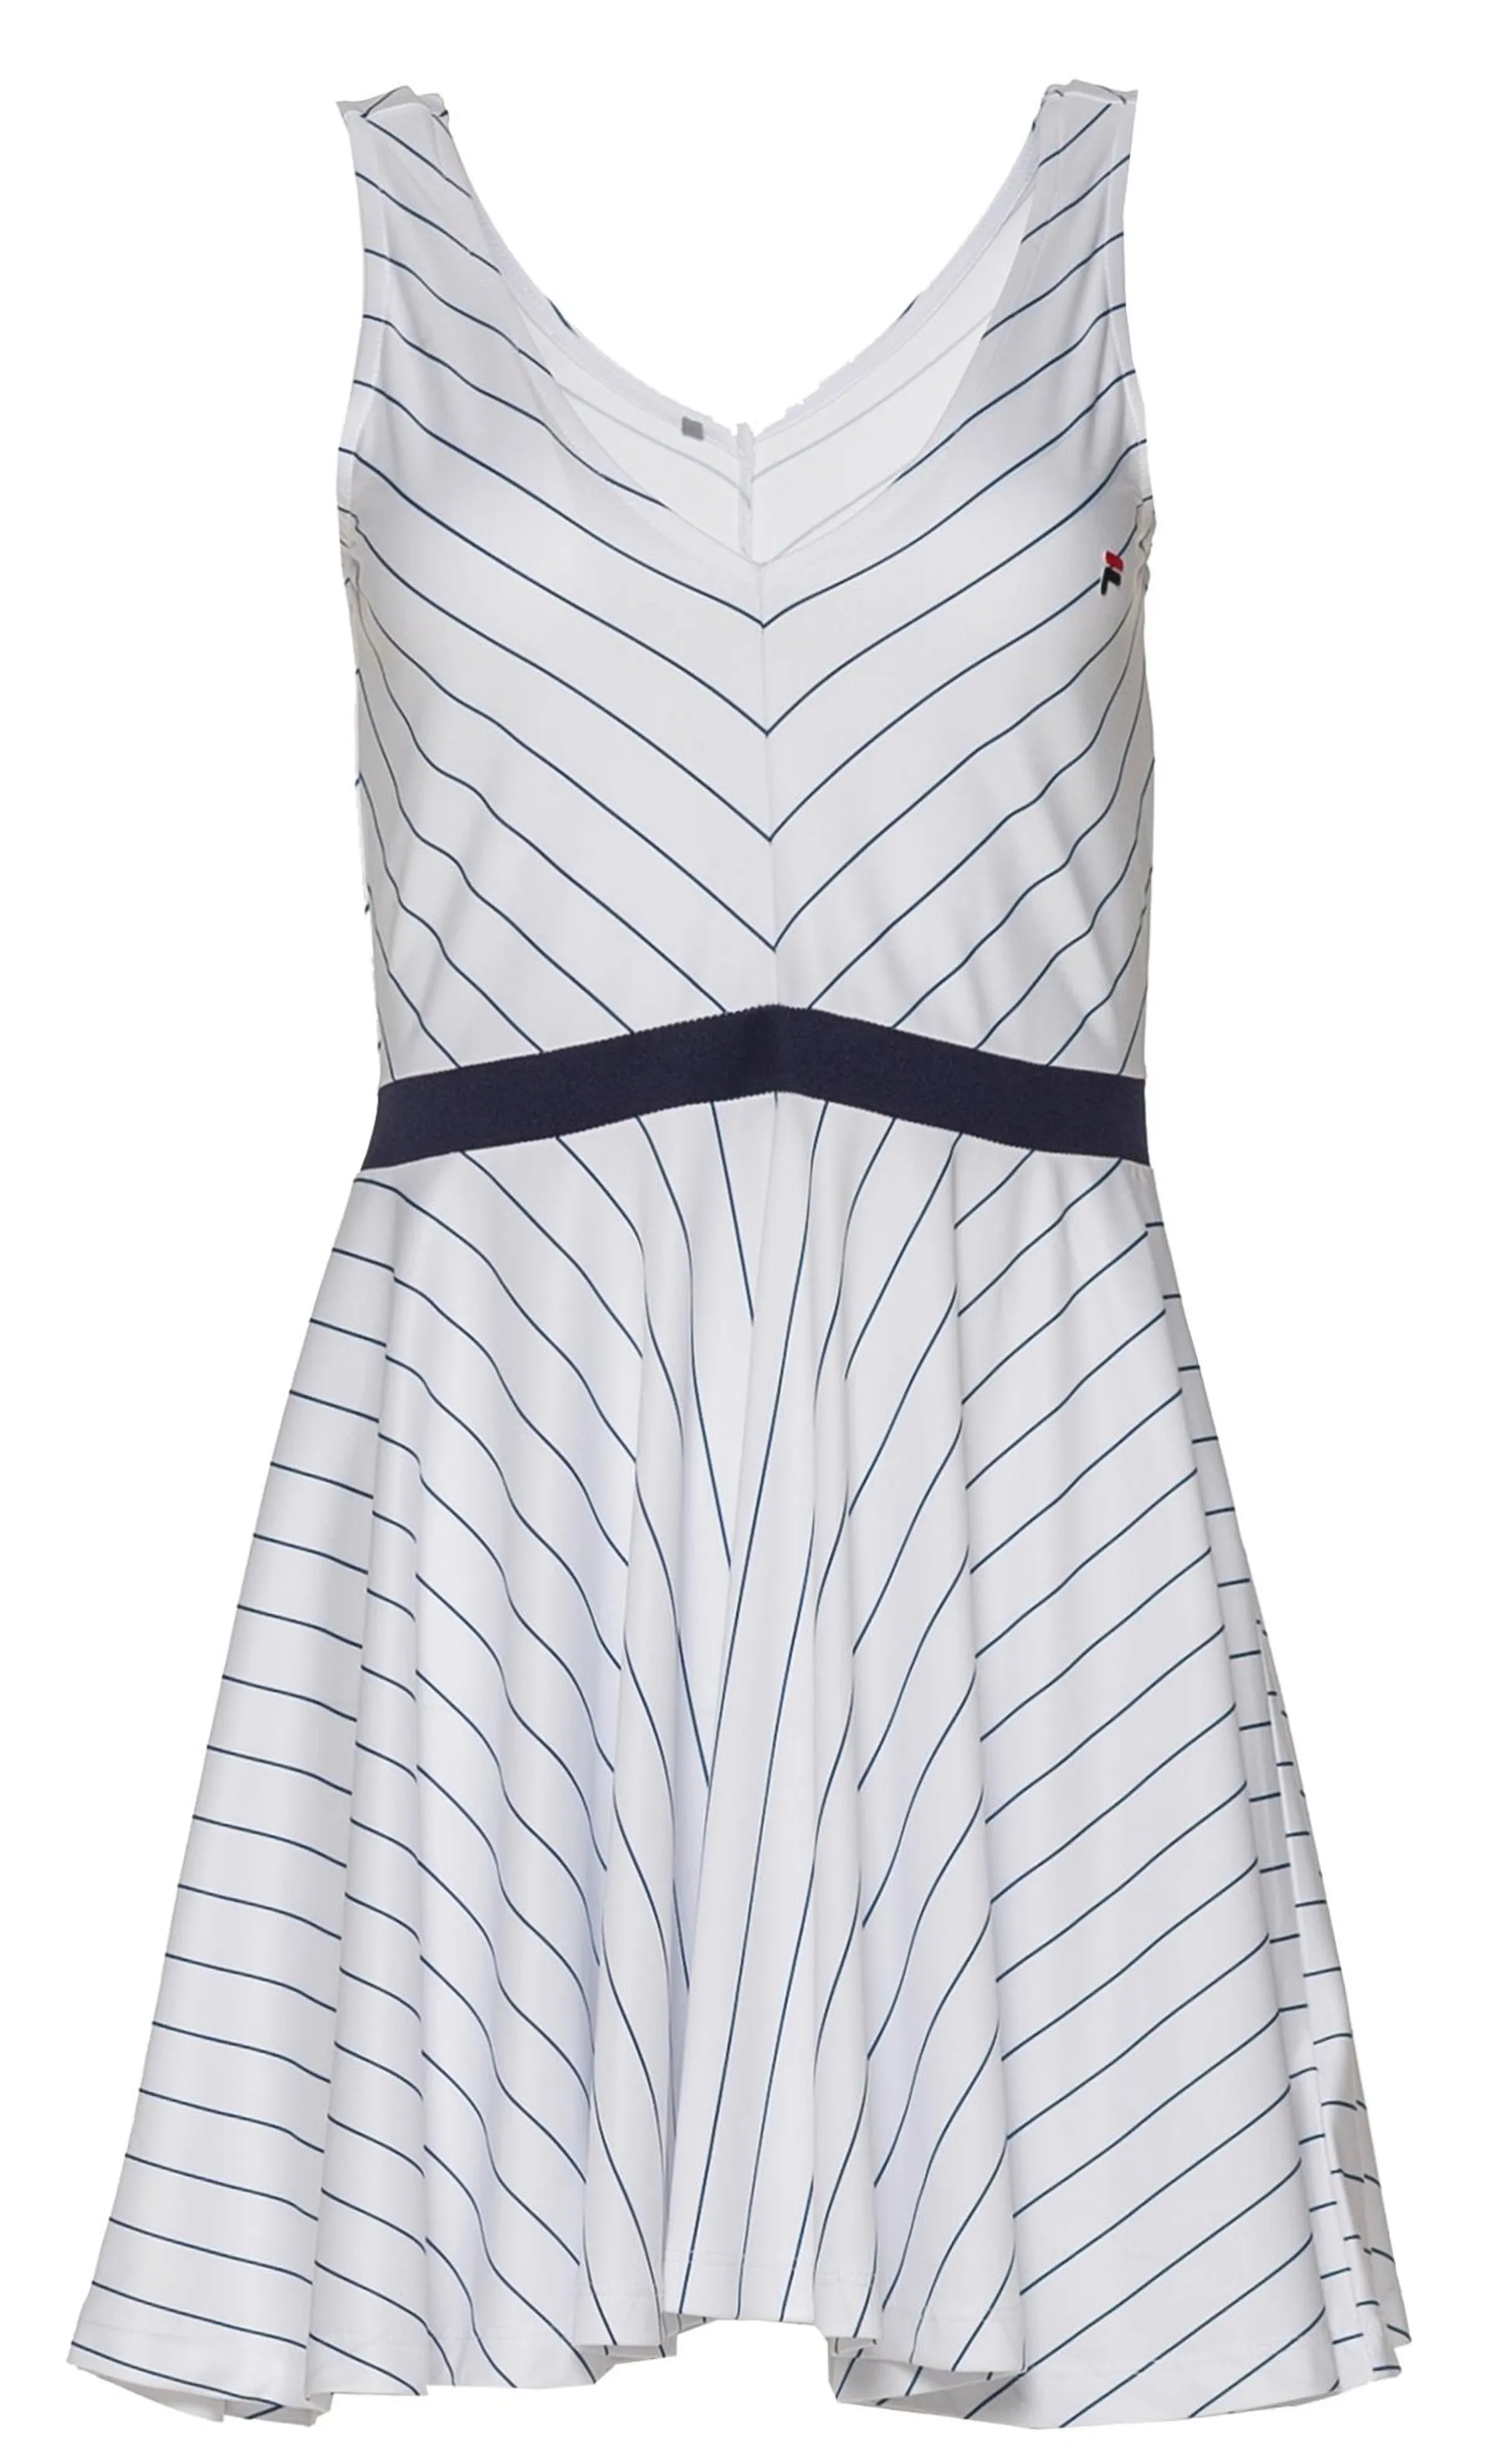 Lottie Tennis Dress